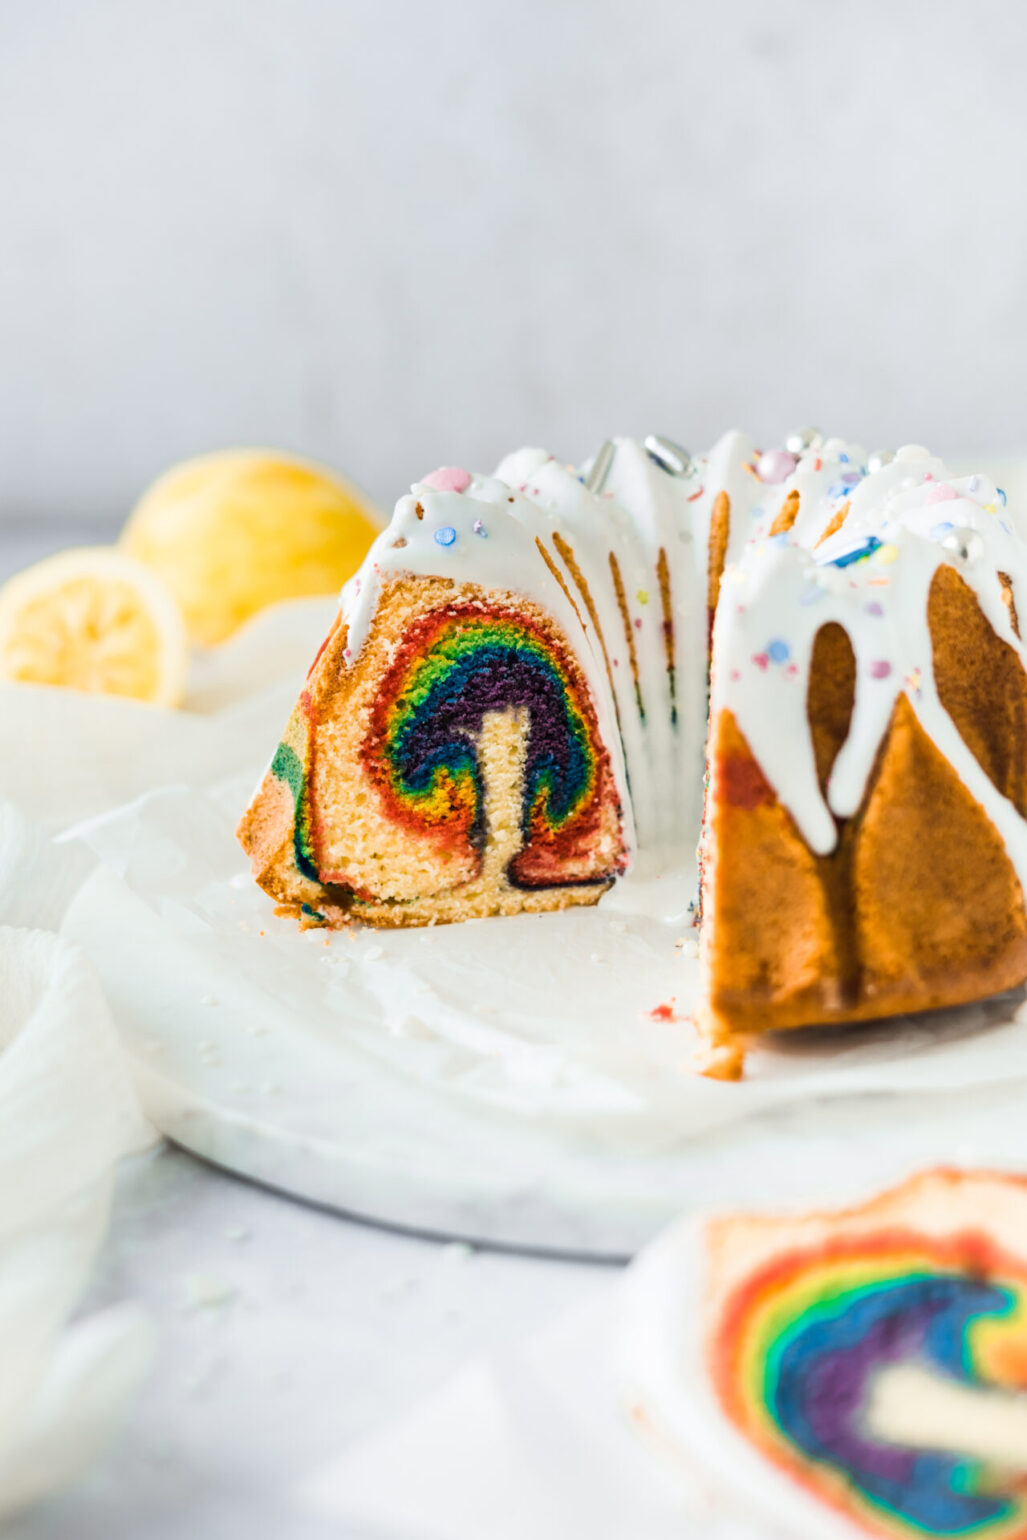 Einfaches Rezept für einen Zitronenkuchen im Regenbogenkuchen Look. Dank Joghurt super saftig. Das Regenbogenmuster lässt sich von außen nur erahnen, weswegen dieser Surprise inside Cake gerade für Kindergeburtstage ein schneller und unaufwendiger Geburtstagskuchen ist. #Regenbogenkuchen #Gugelhupf #Zitronenkuchen #Geburtstagskuchen #backen #Rezept